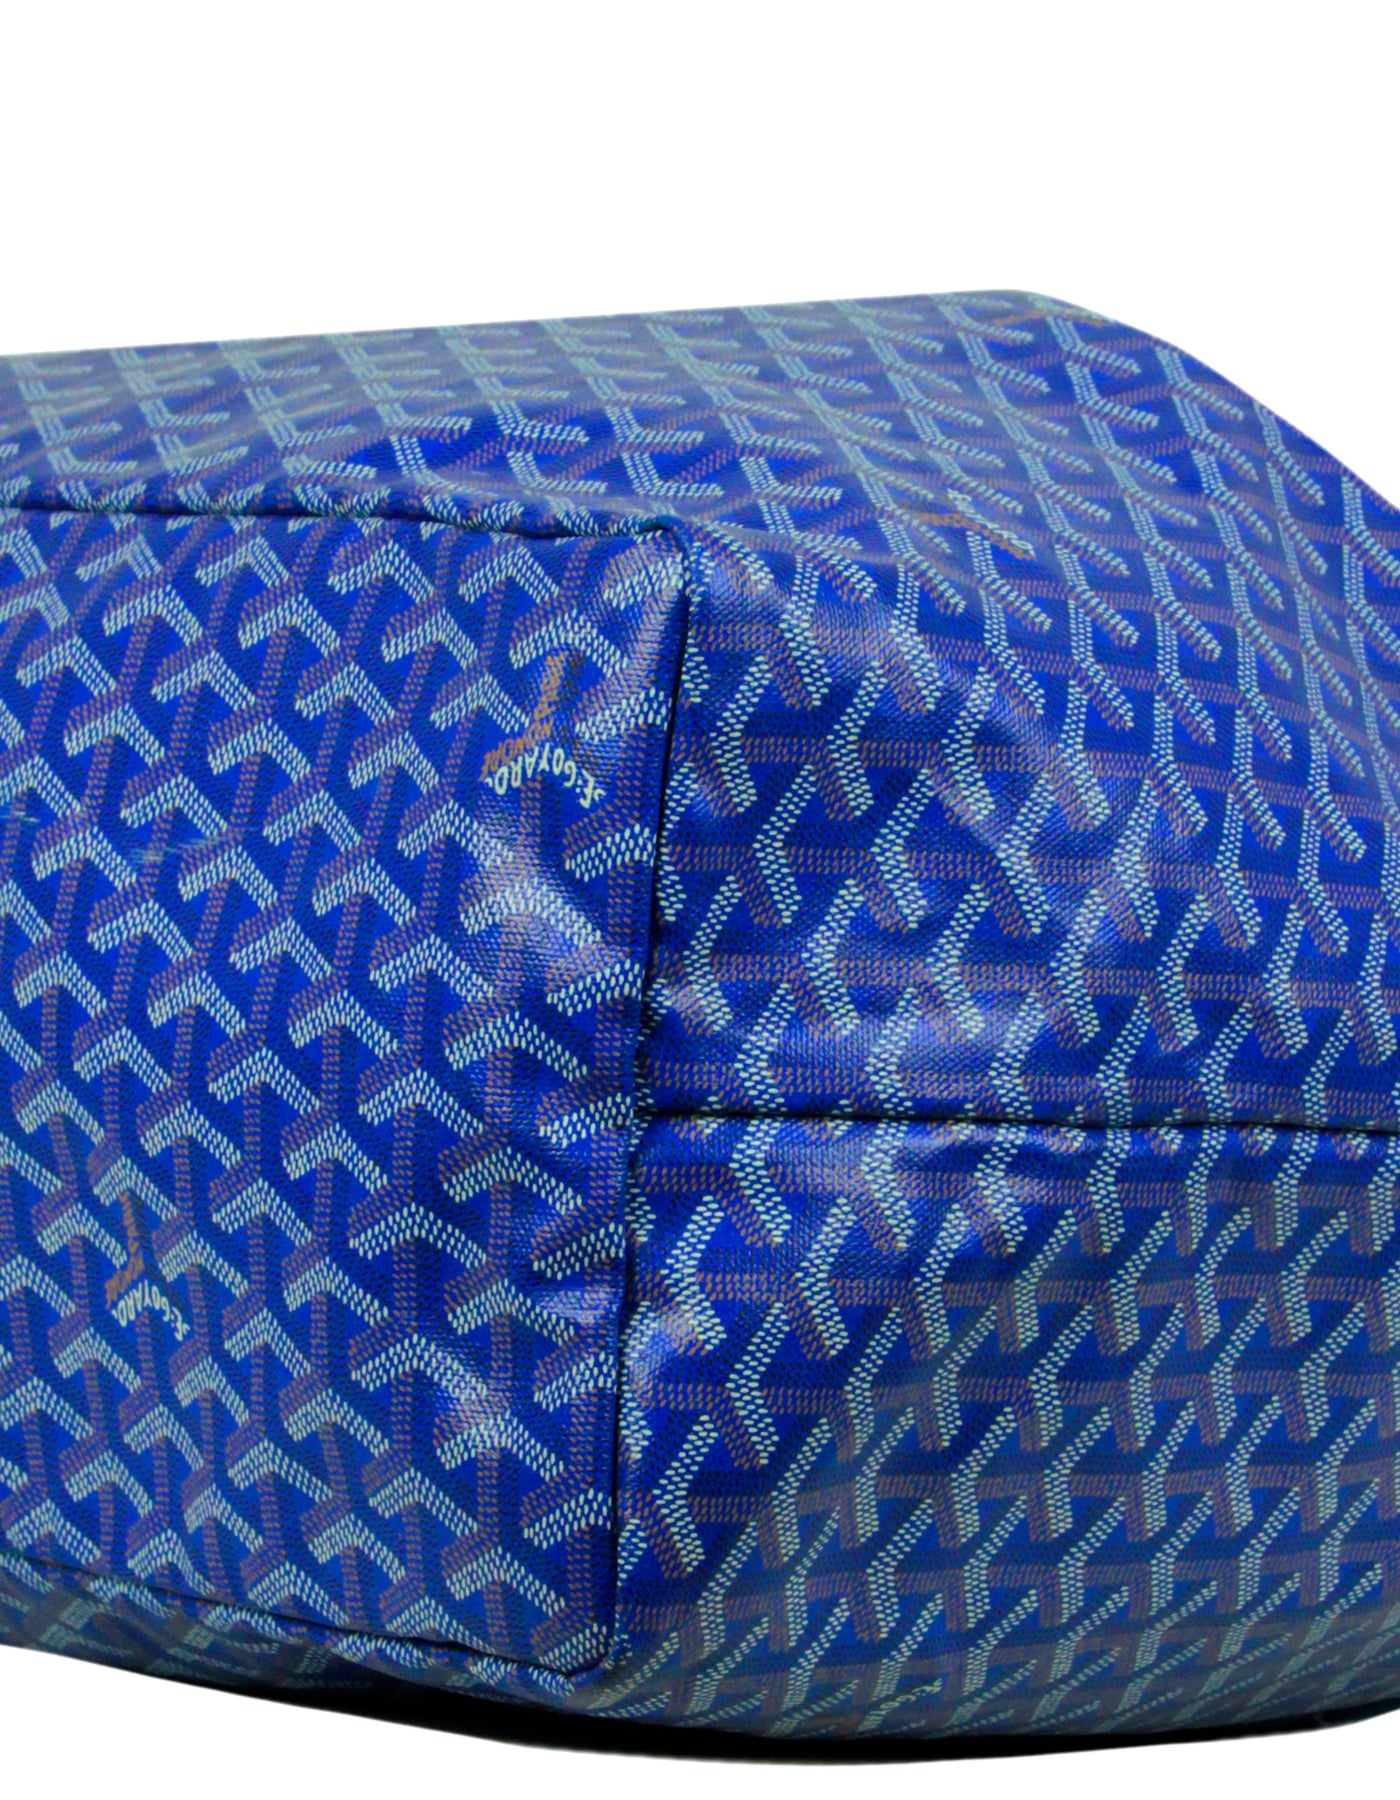 Goyard Goyardine St. Louis GM w/ Pouch - Blue Totes, Handbags - GOY37749